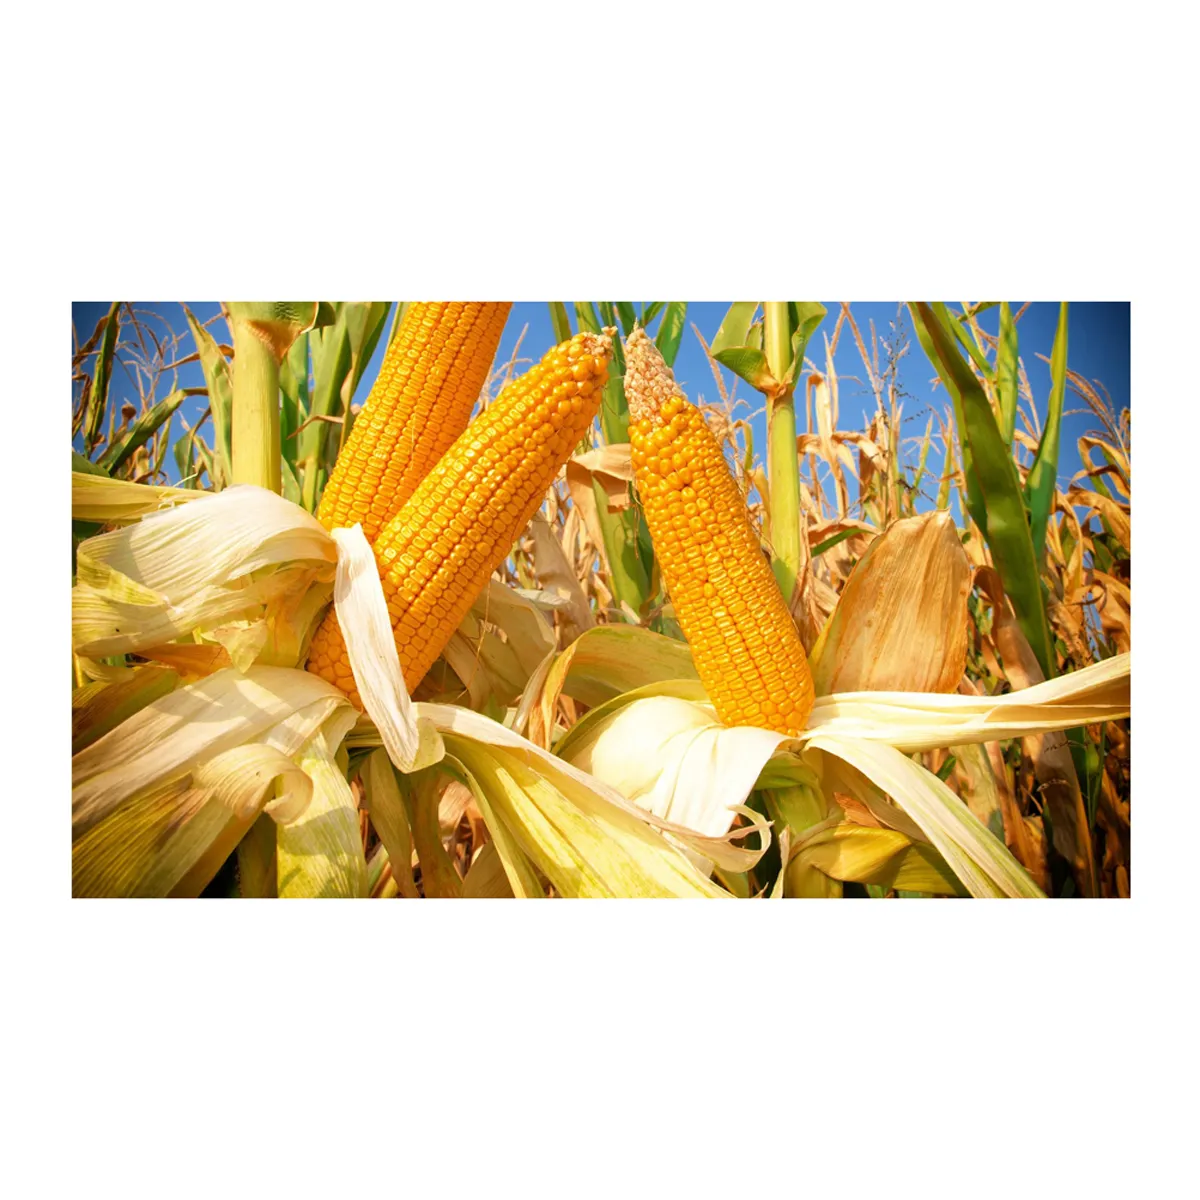 La vente de nouvelles récoltes de maïs jaune et blanc/maïs pour l'alimentation humaine et animale.